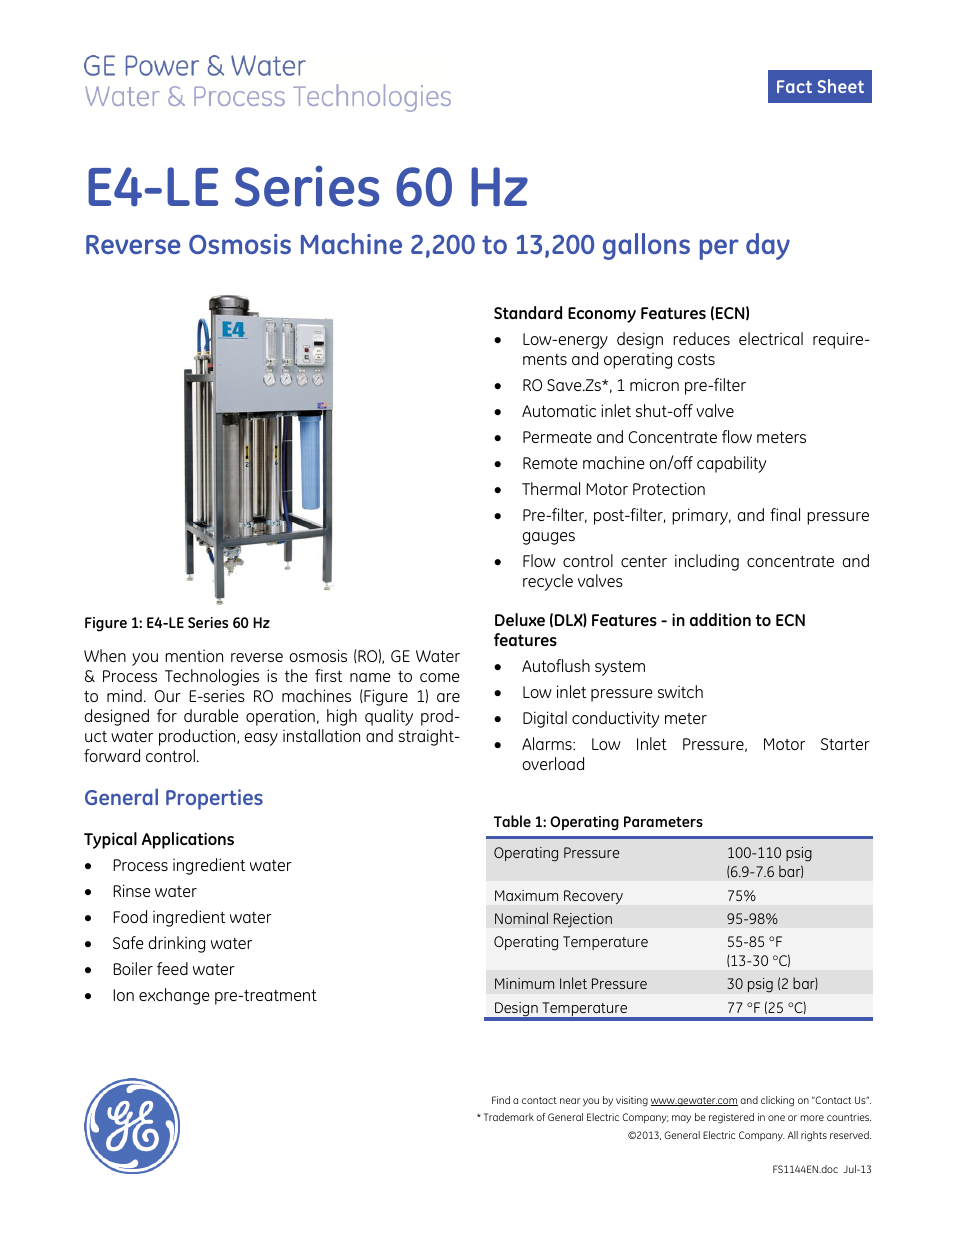 E-Series Reverse Osmosis - E4 LE 60 Hz